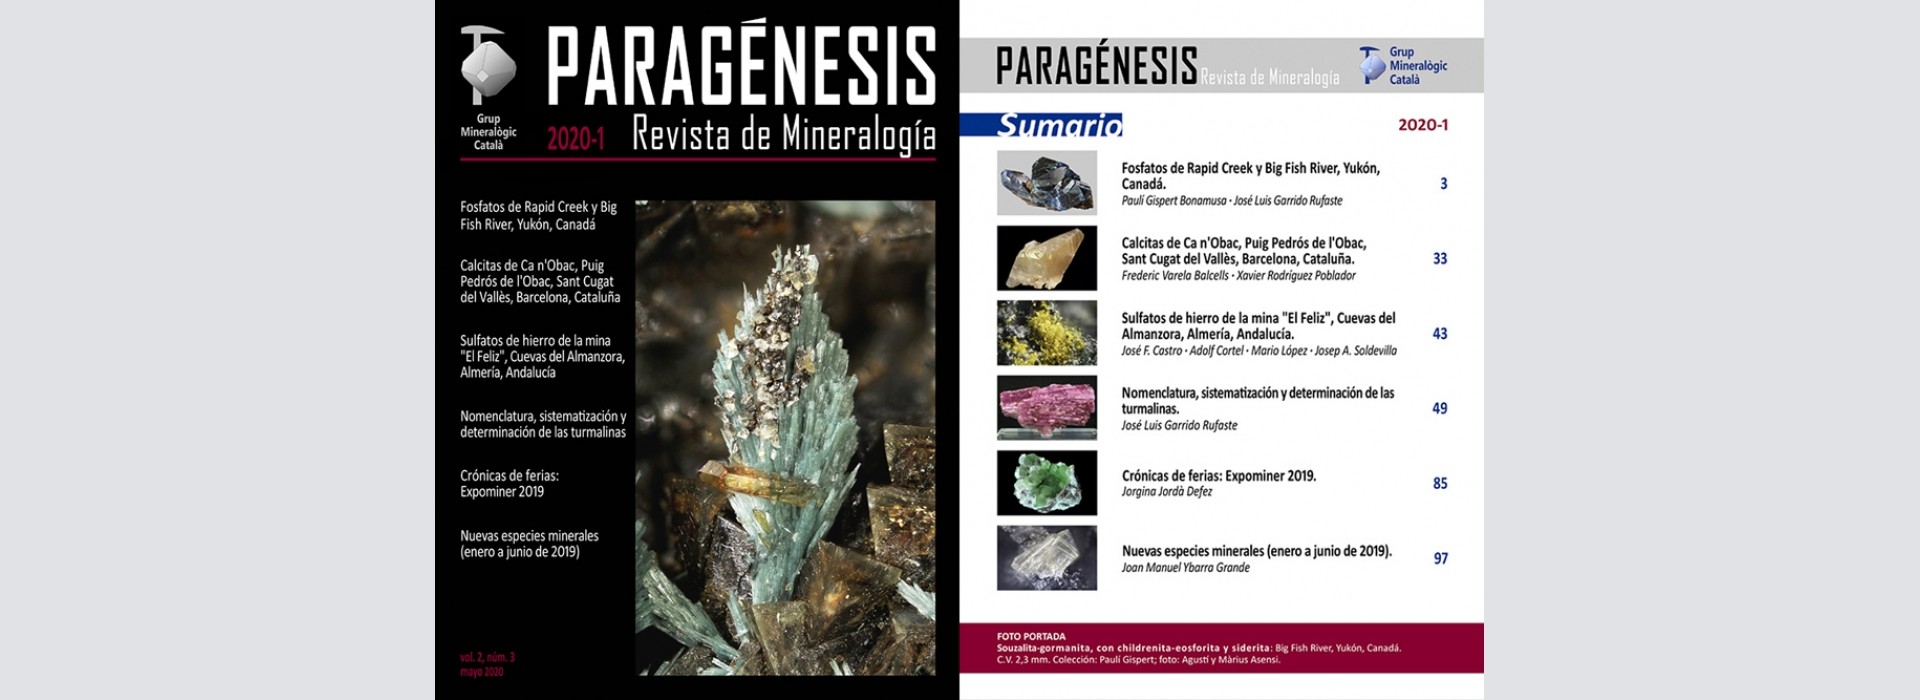 Nova revista Mineralogistes de Catalunya 2020-1 i Paragénesis 2020-1